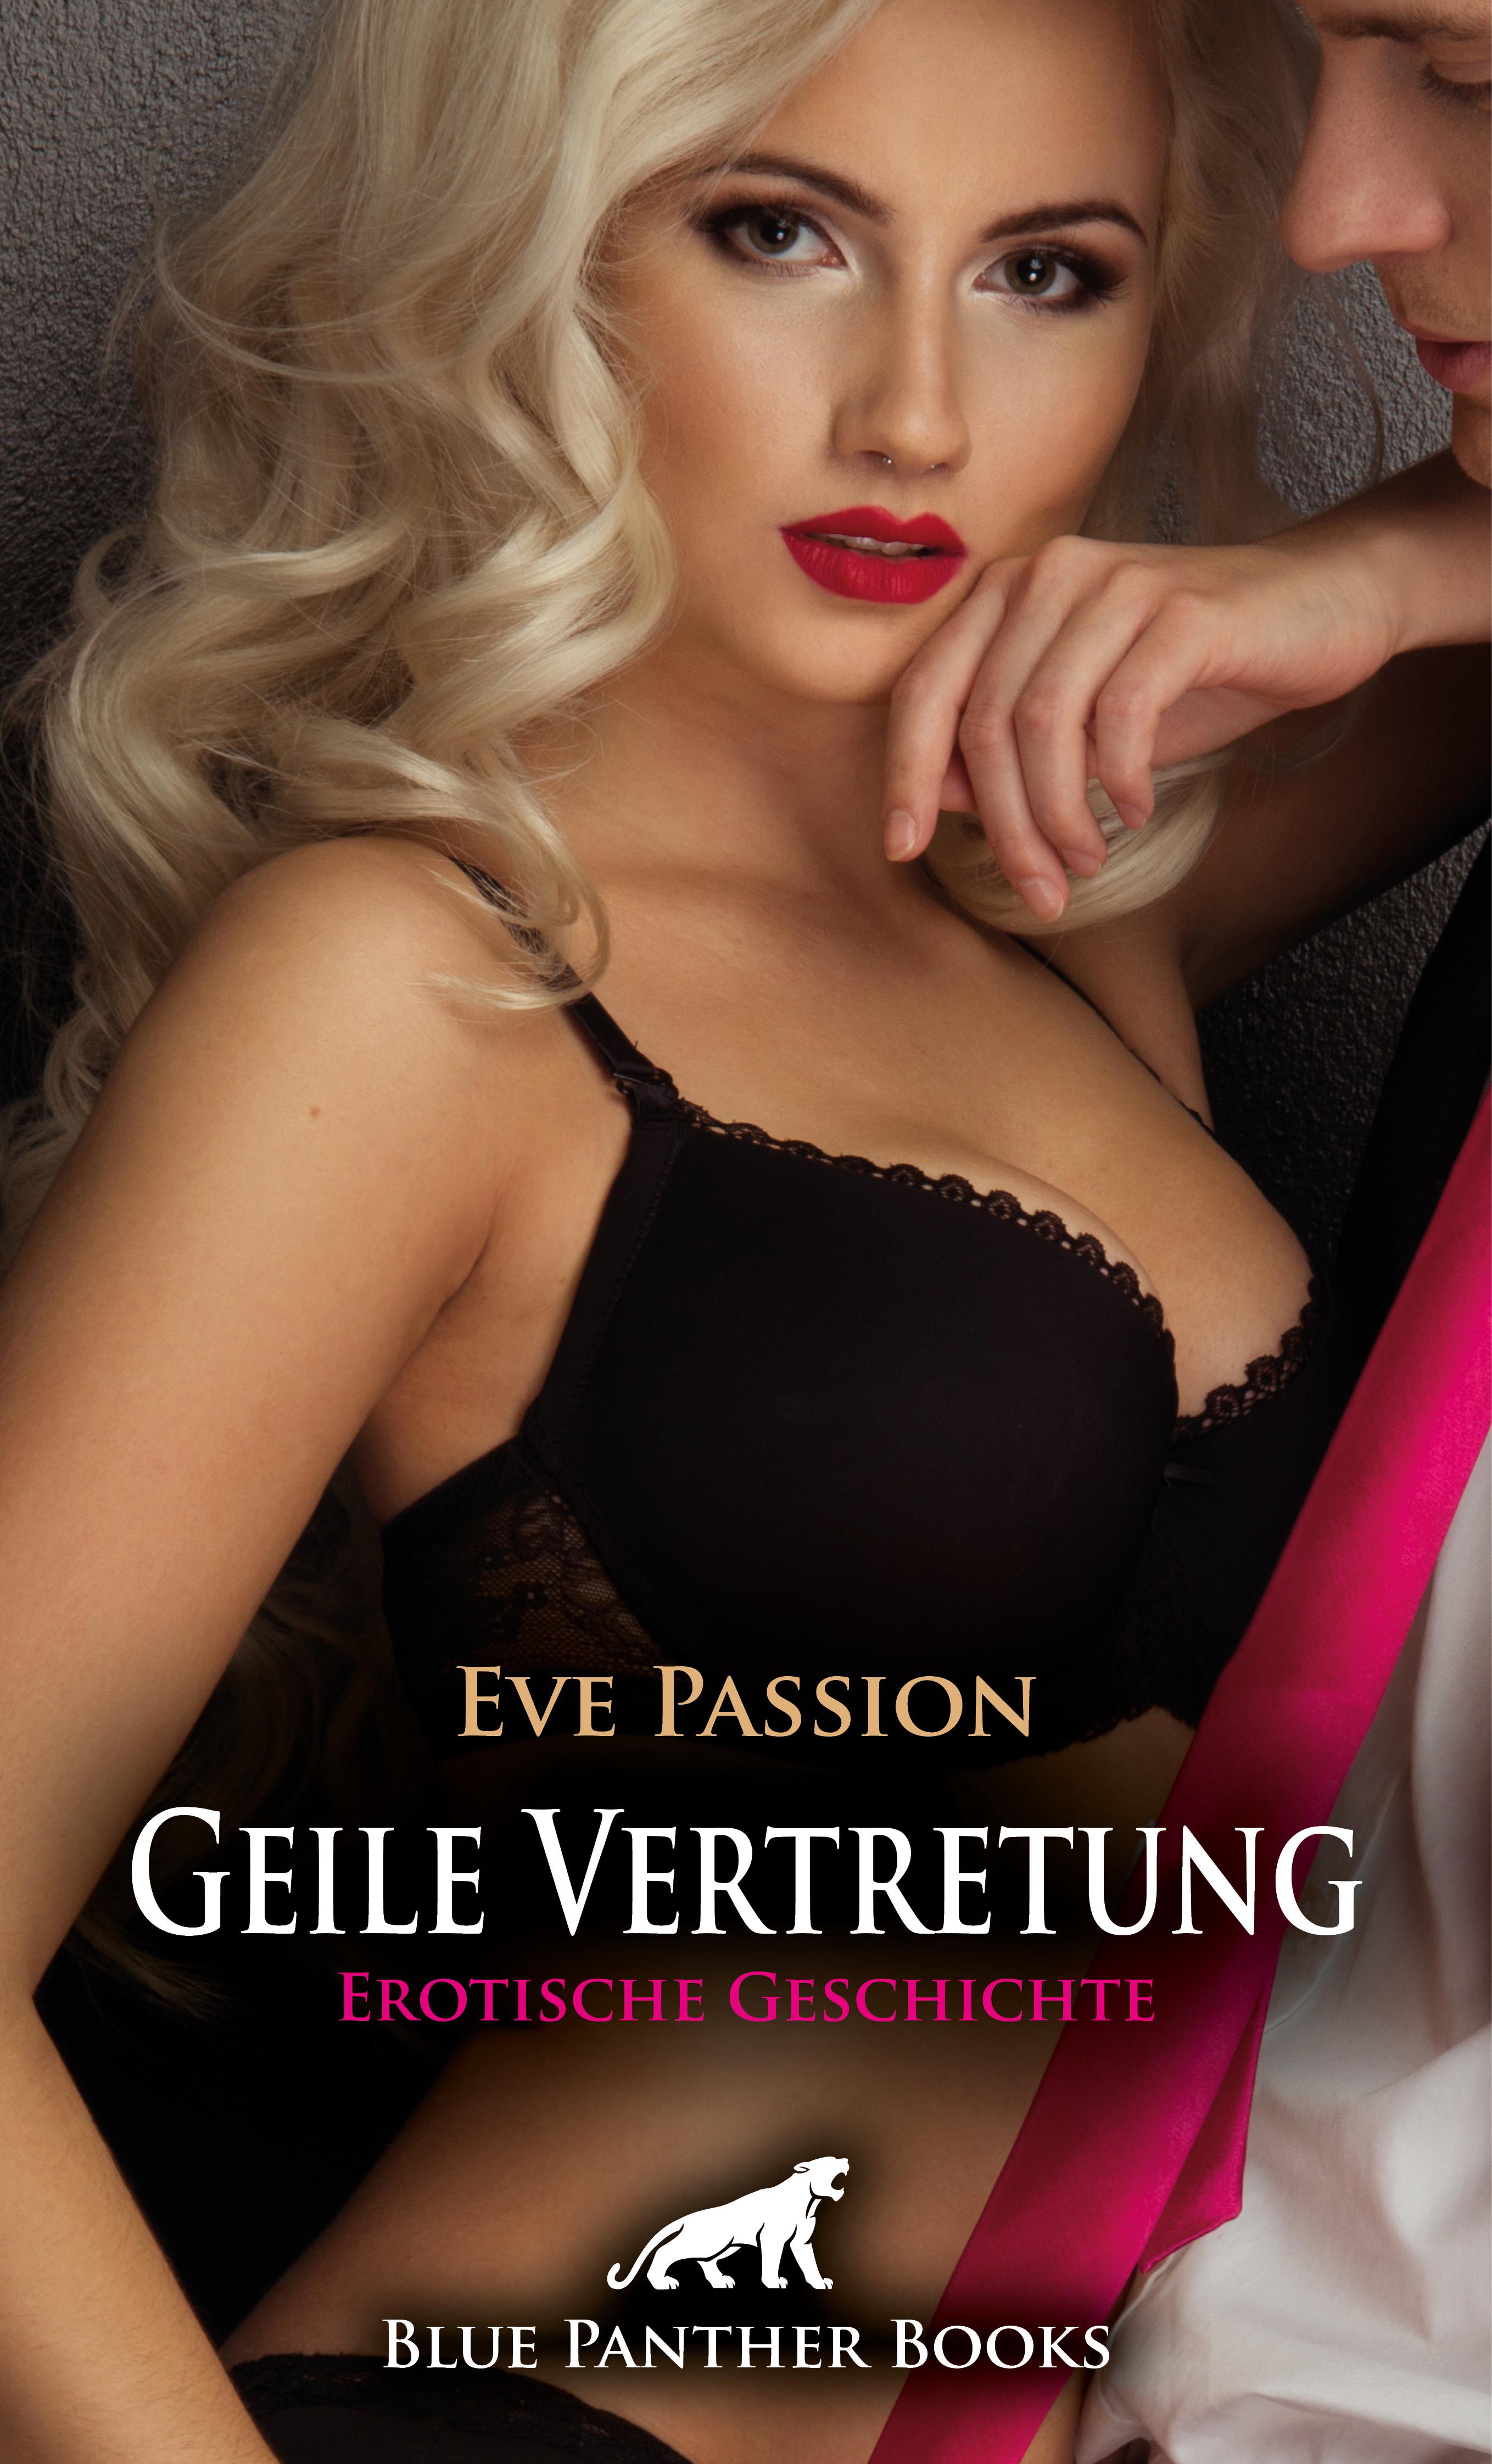 Geile Vertretung Erotische Geschichte (Eve Passion, blue panther books